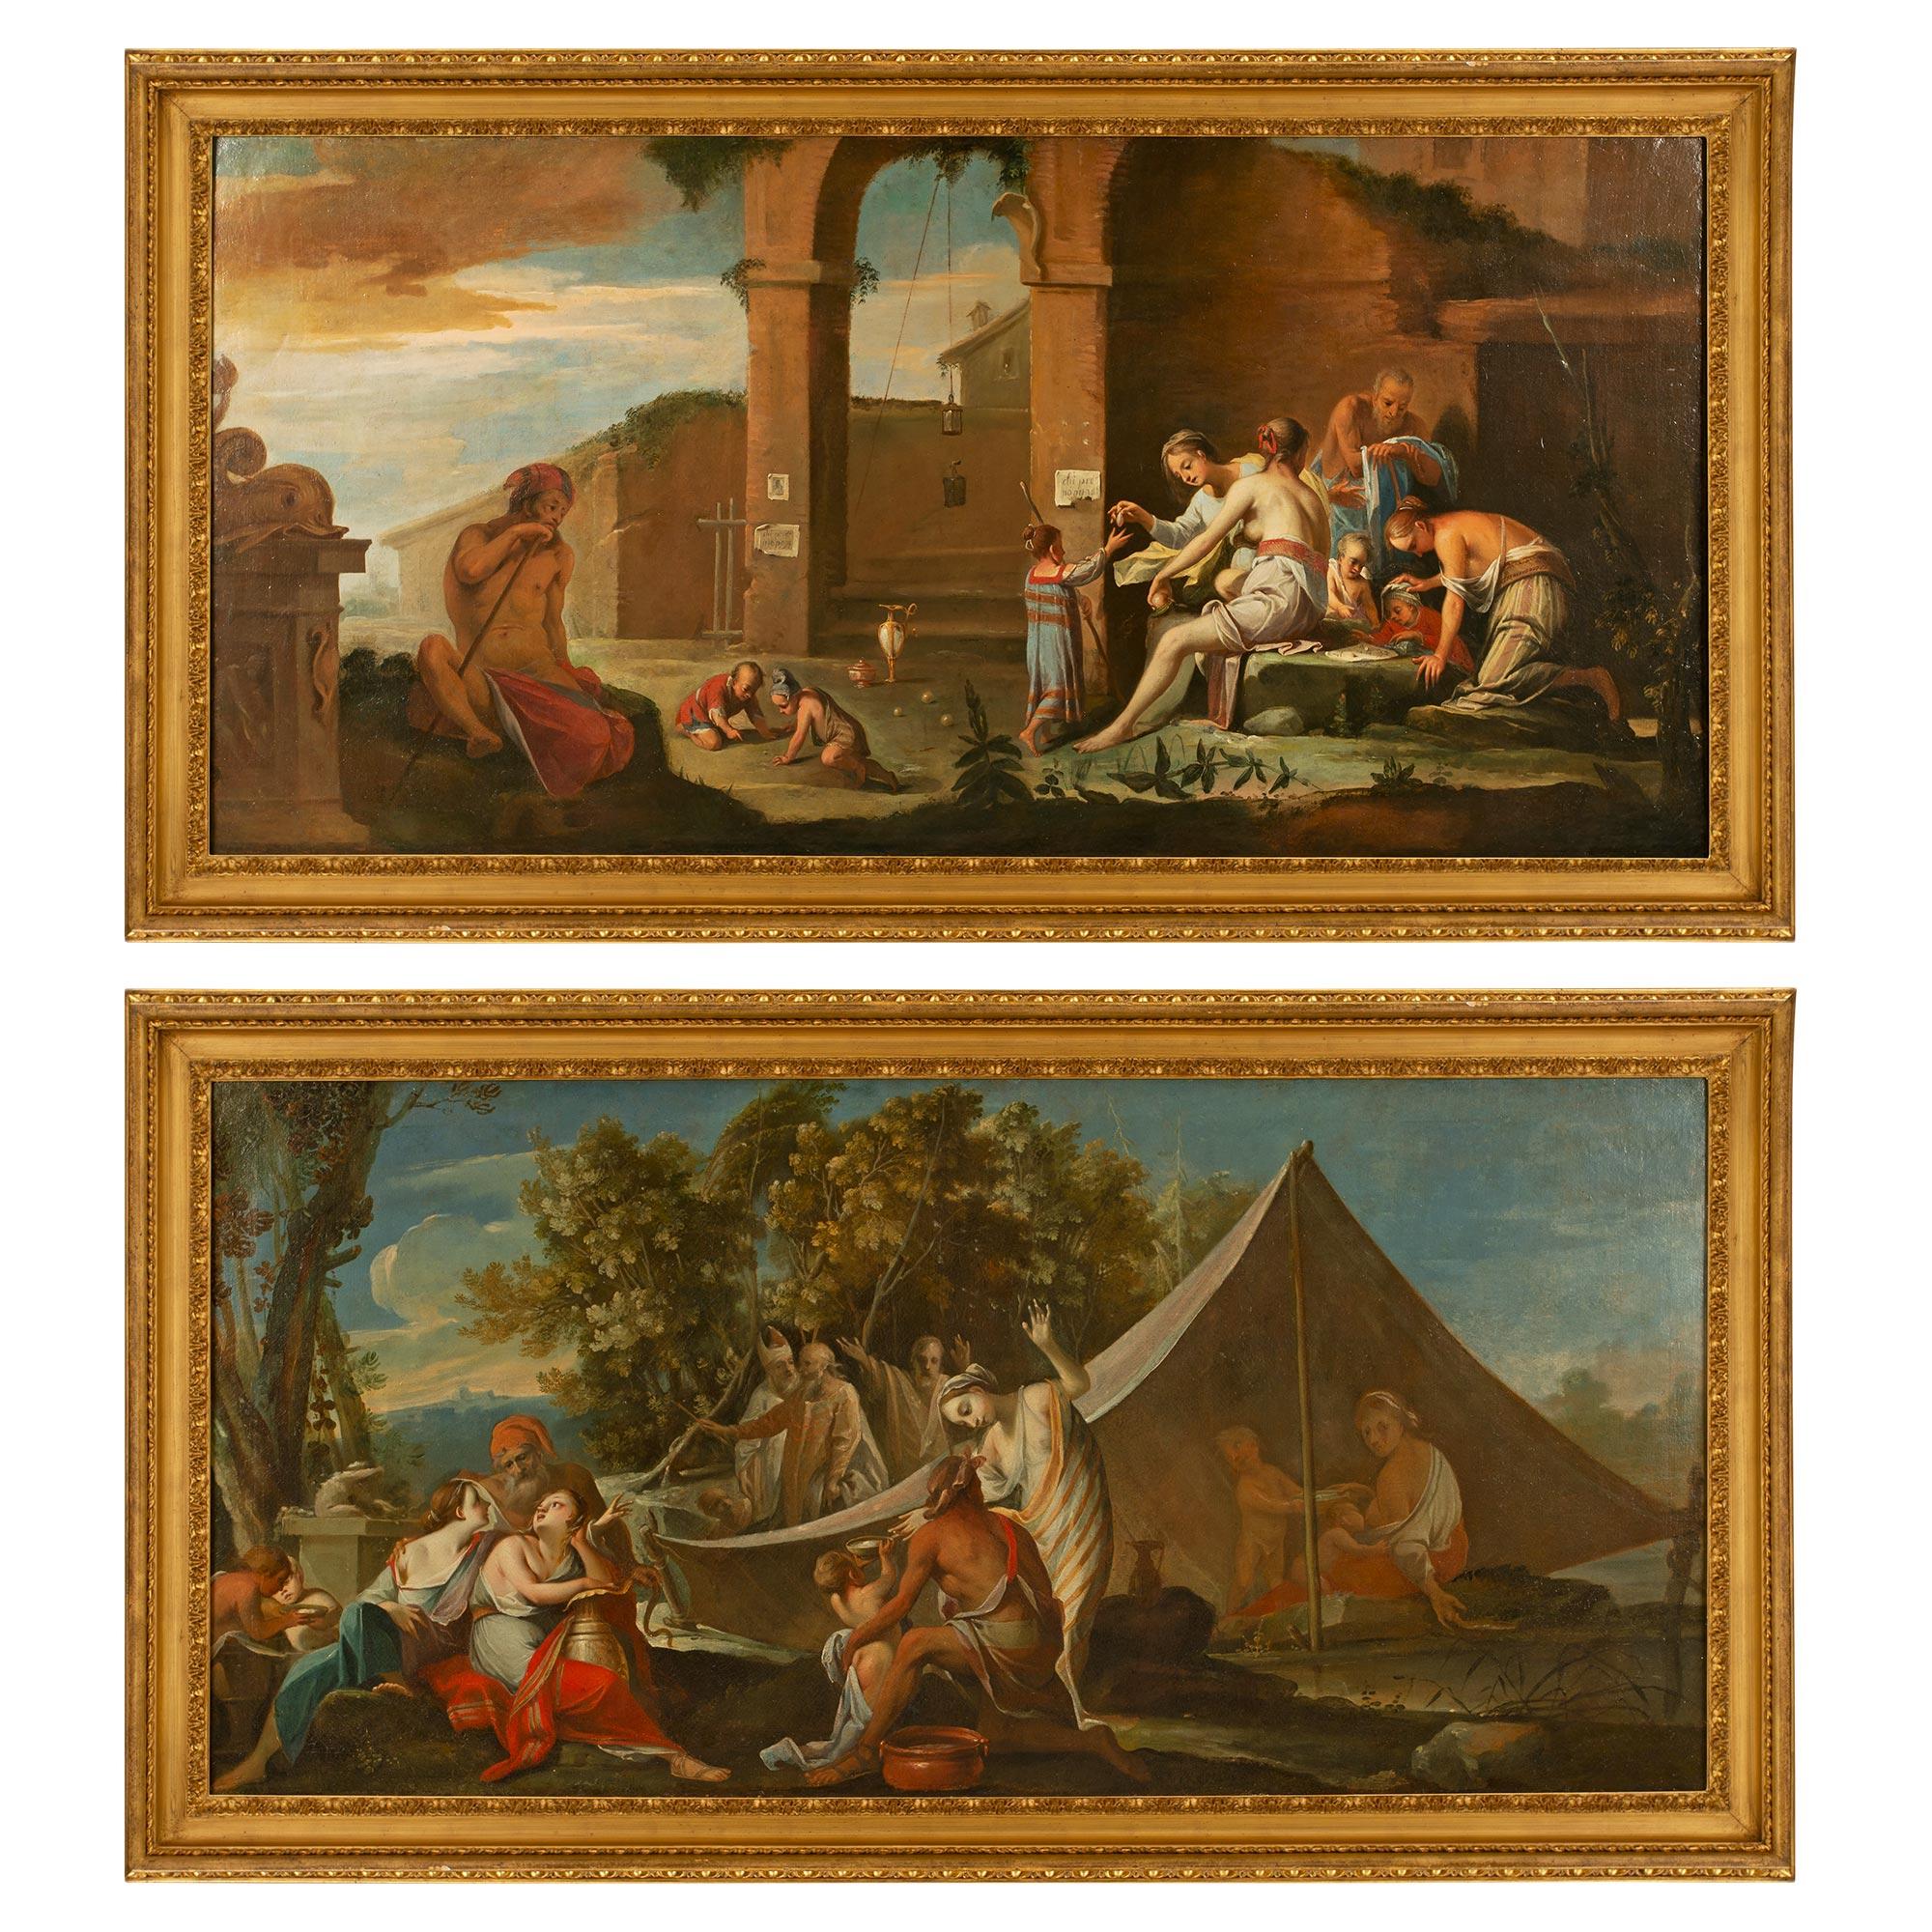 Paire de peintures italiennes du 17ème siècle à l'huile sur toile d'Antonio Travi